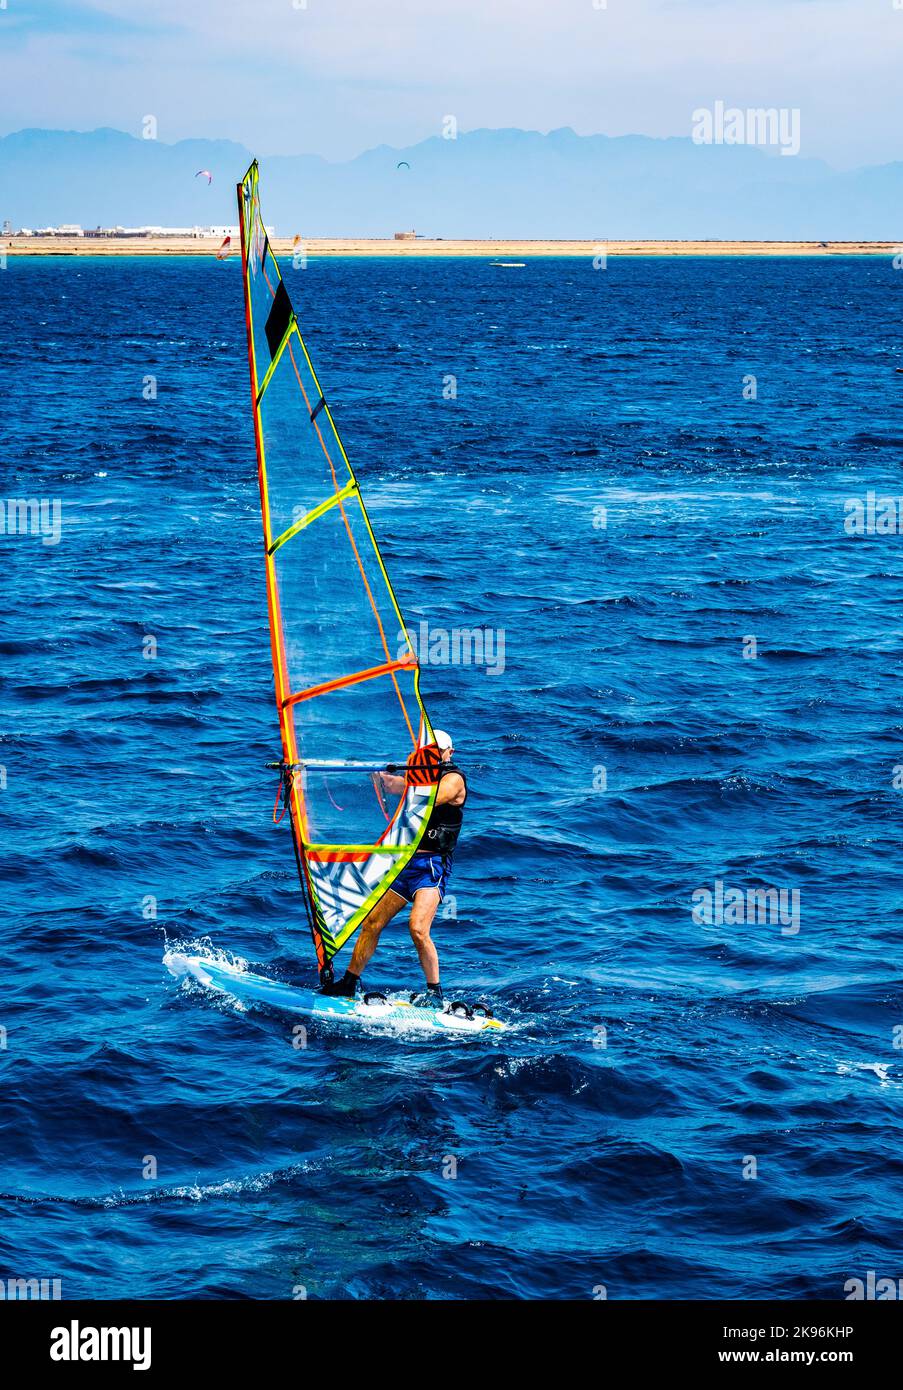 Windsurf deporte extremo en las olas azules del mar Foto de stock